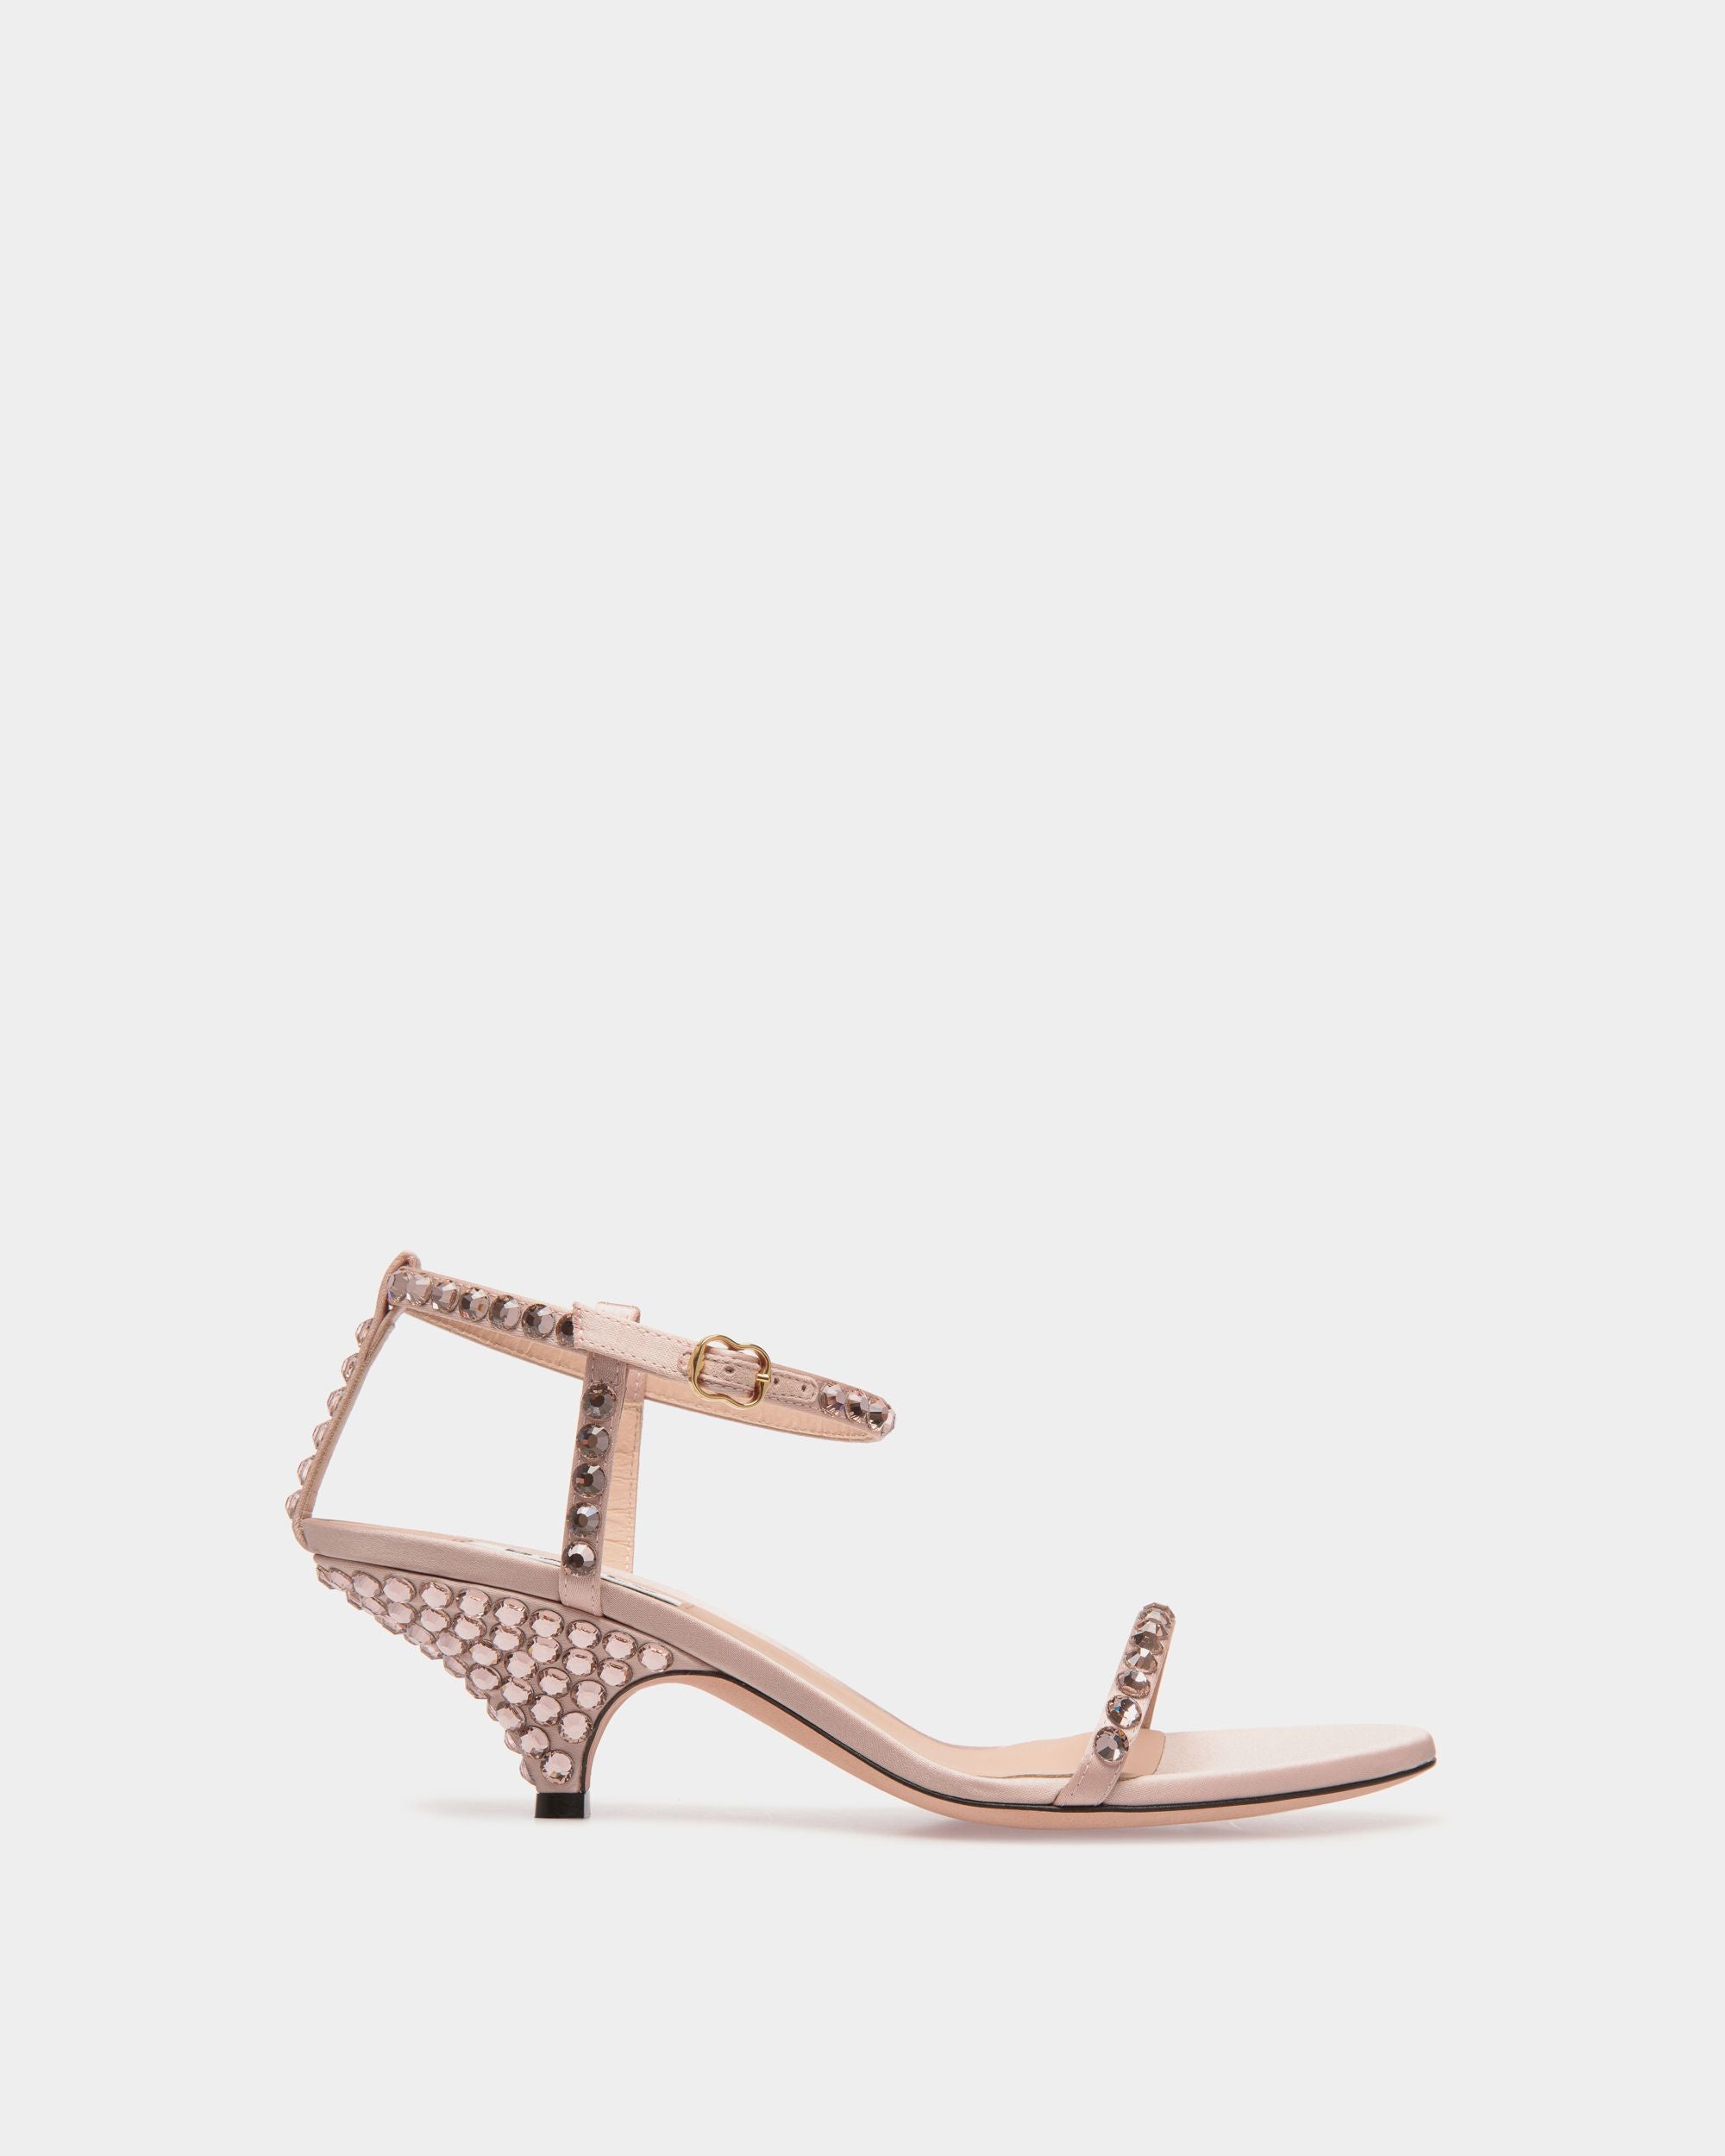 Katy | Sandale für Damen mit Absatz aus Stoff in Light Pink mit Kristallen | Bally | Still Life Seite